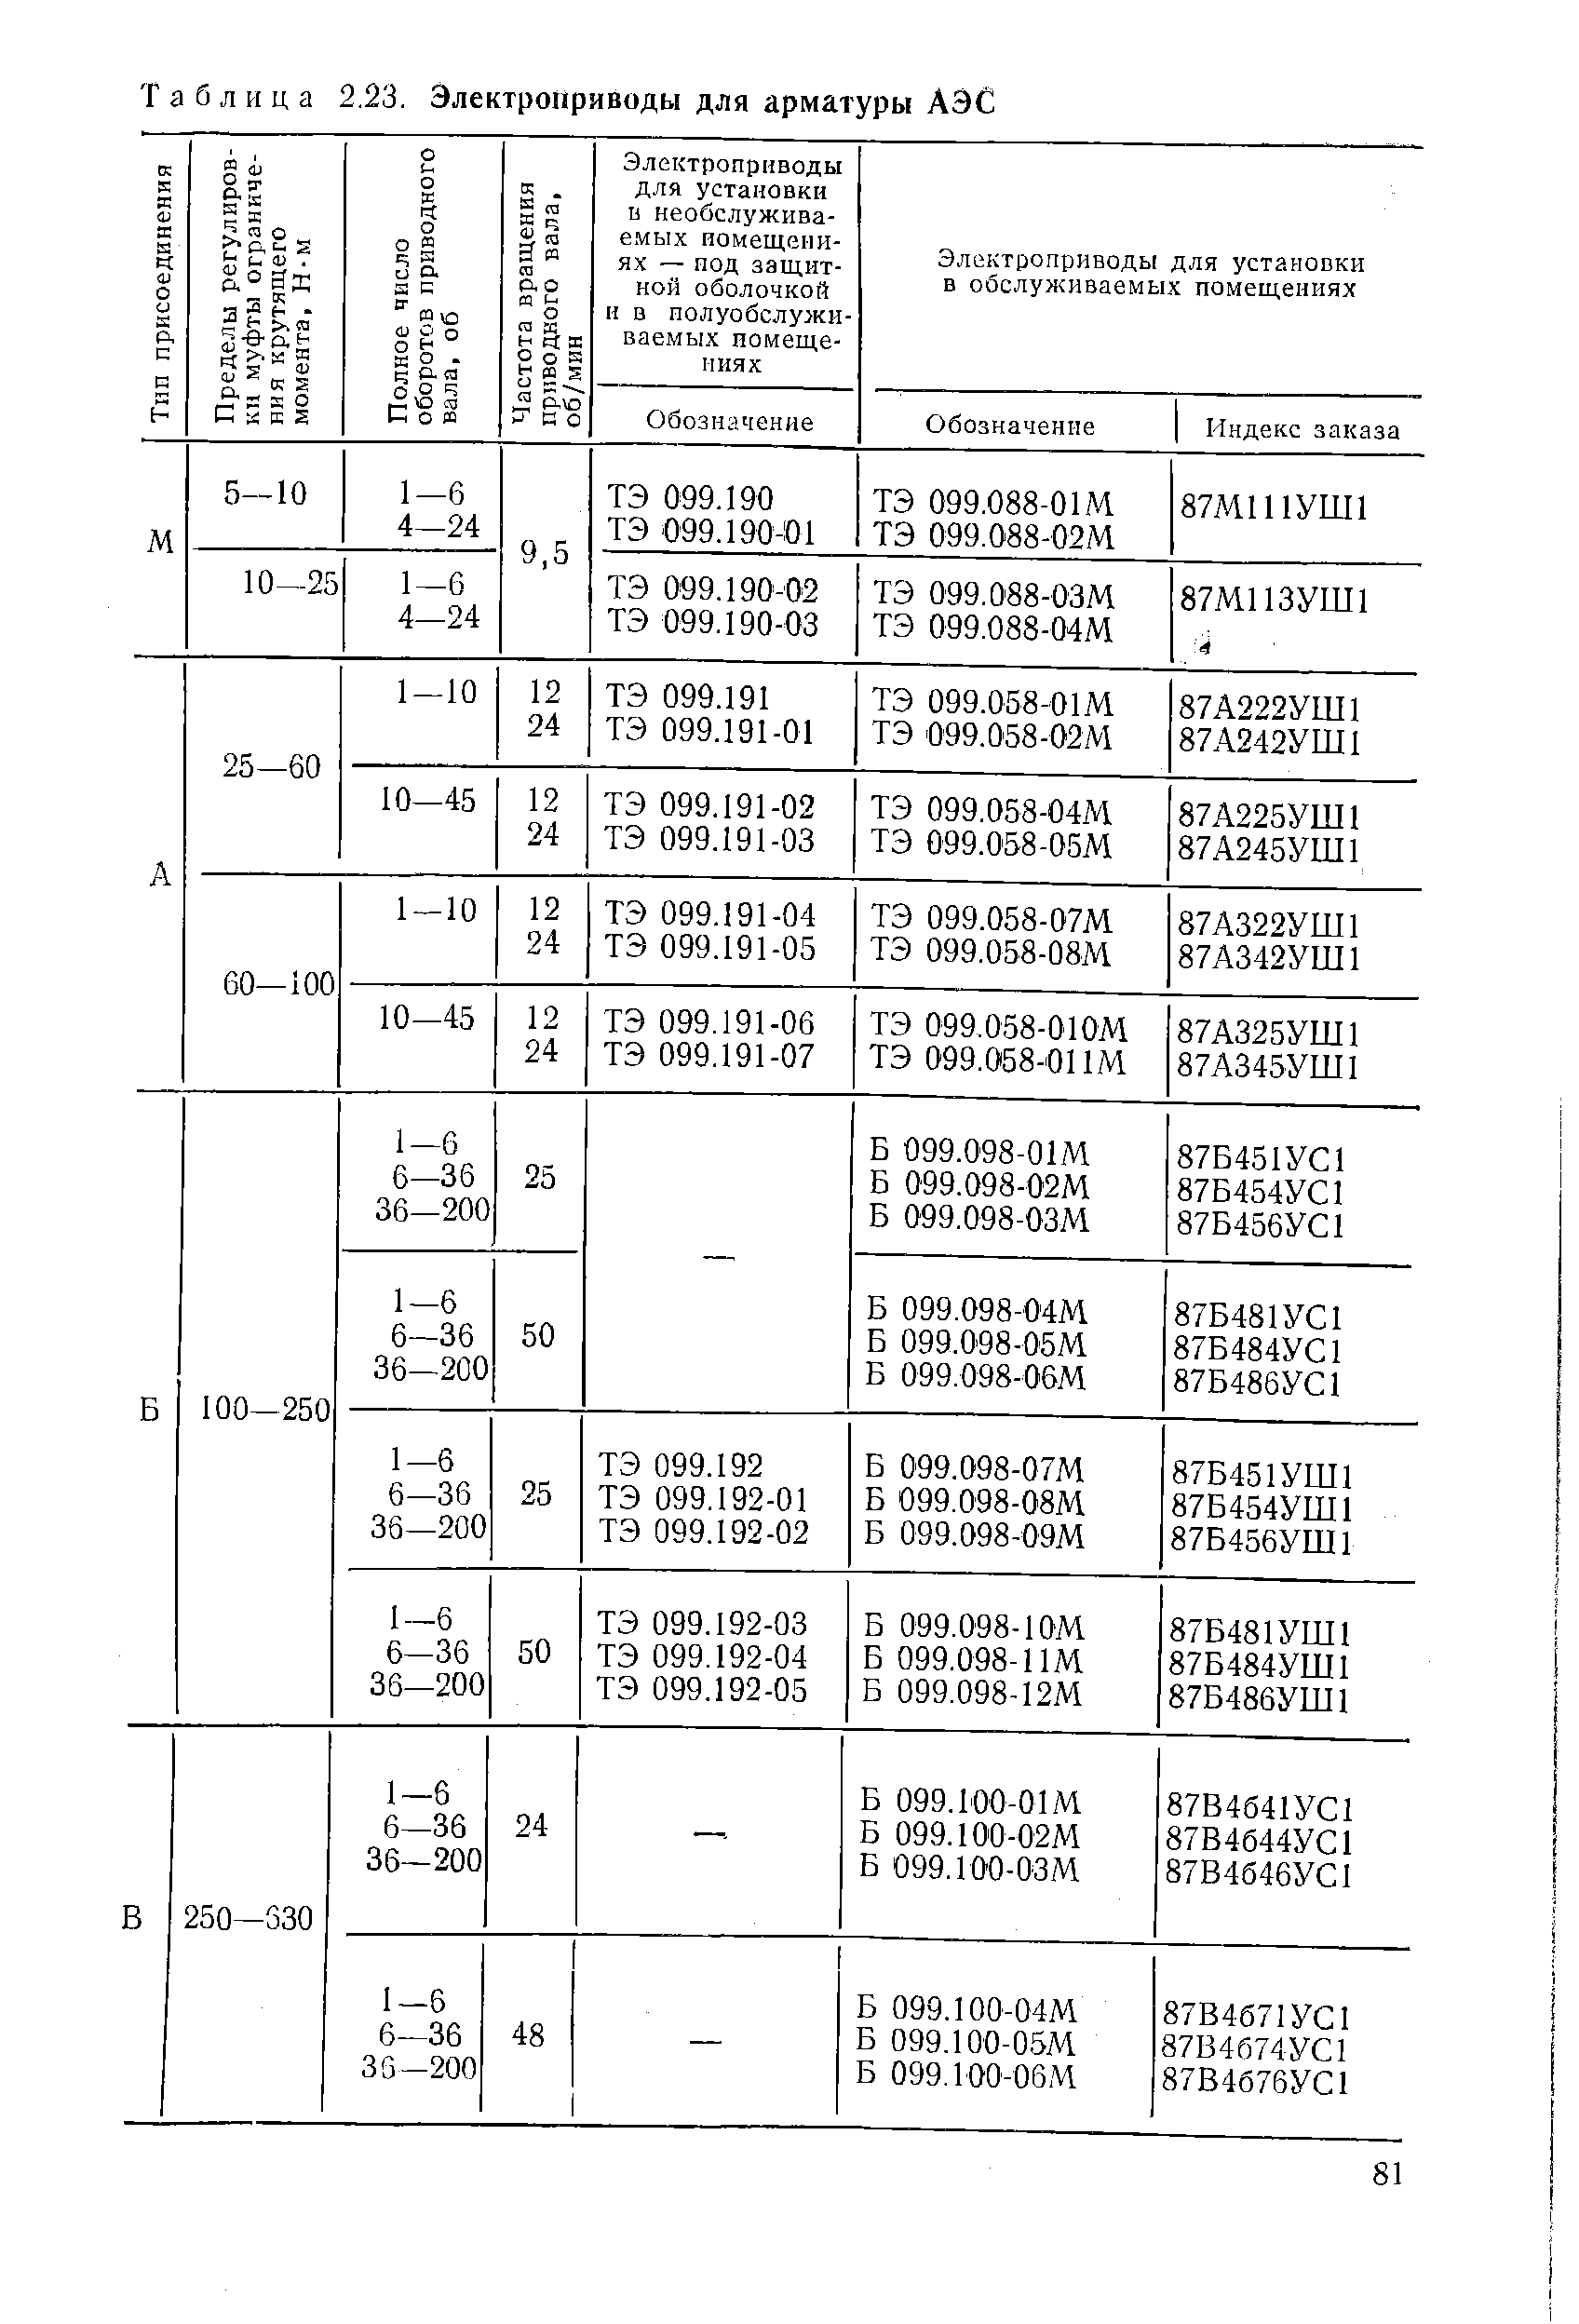 Таблица 2.23. Электроприводы для арматуры АЭС
